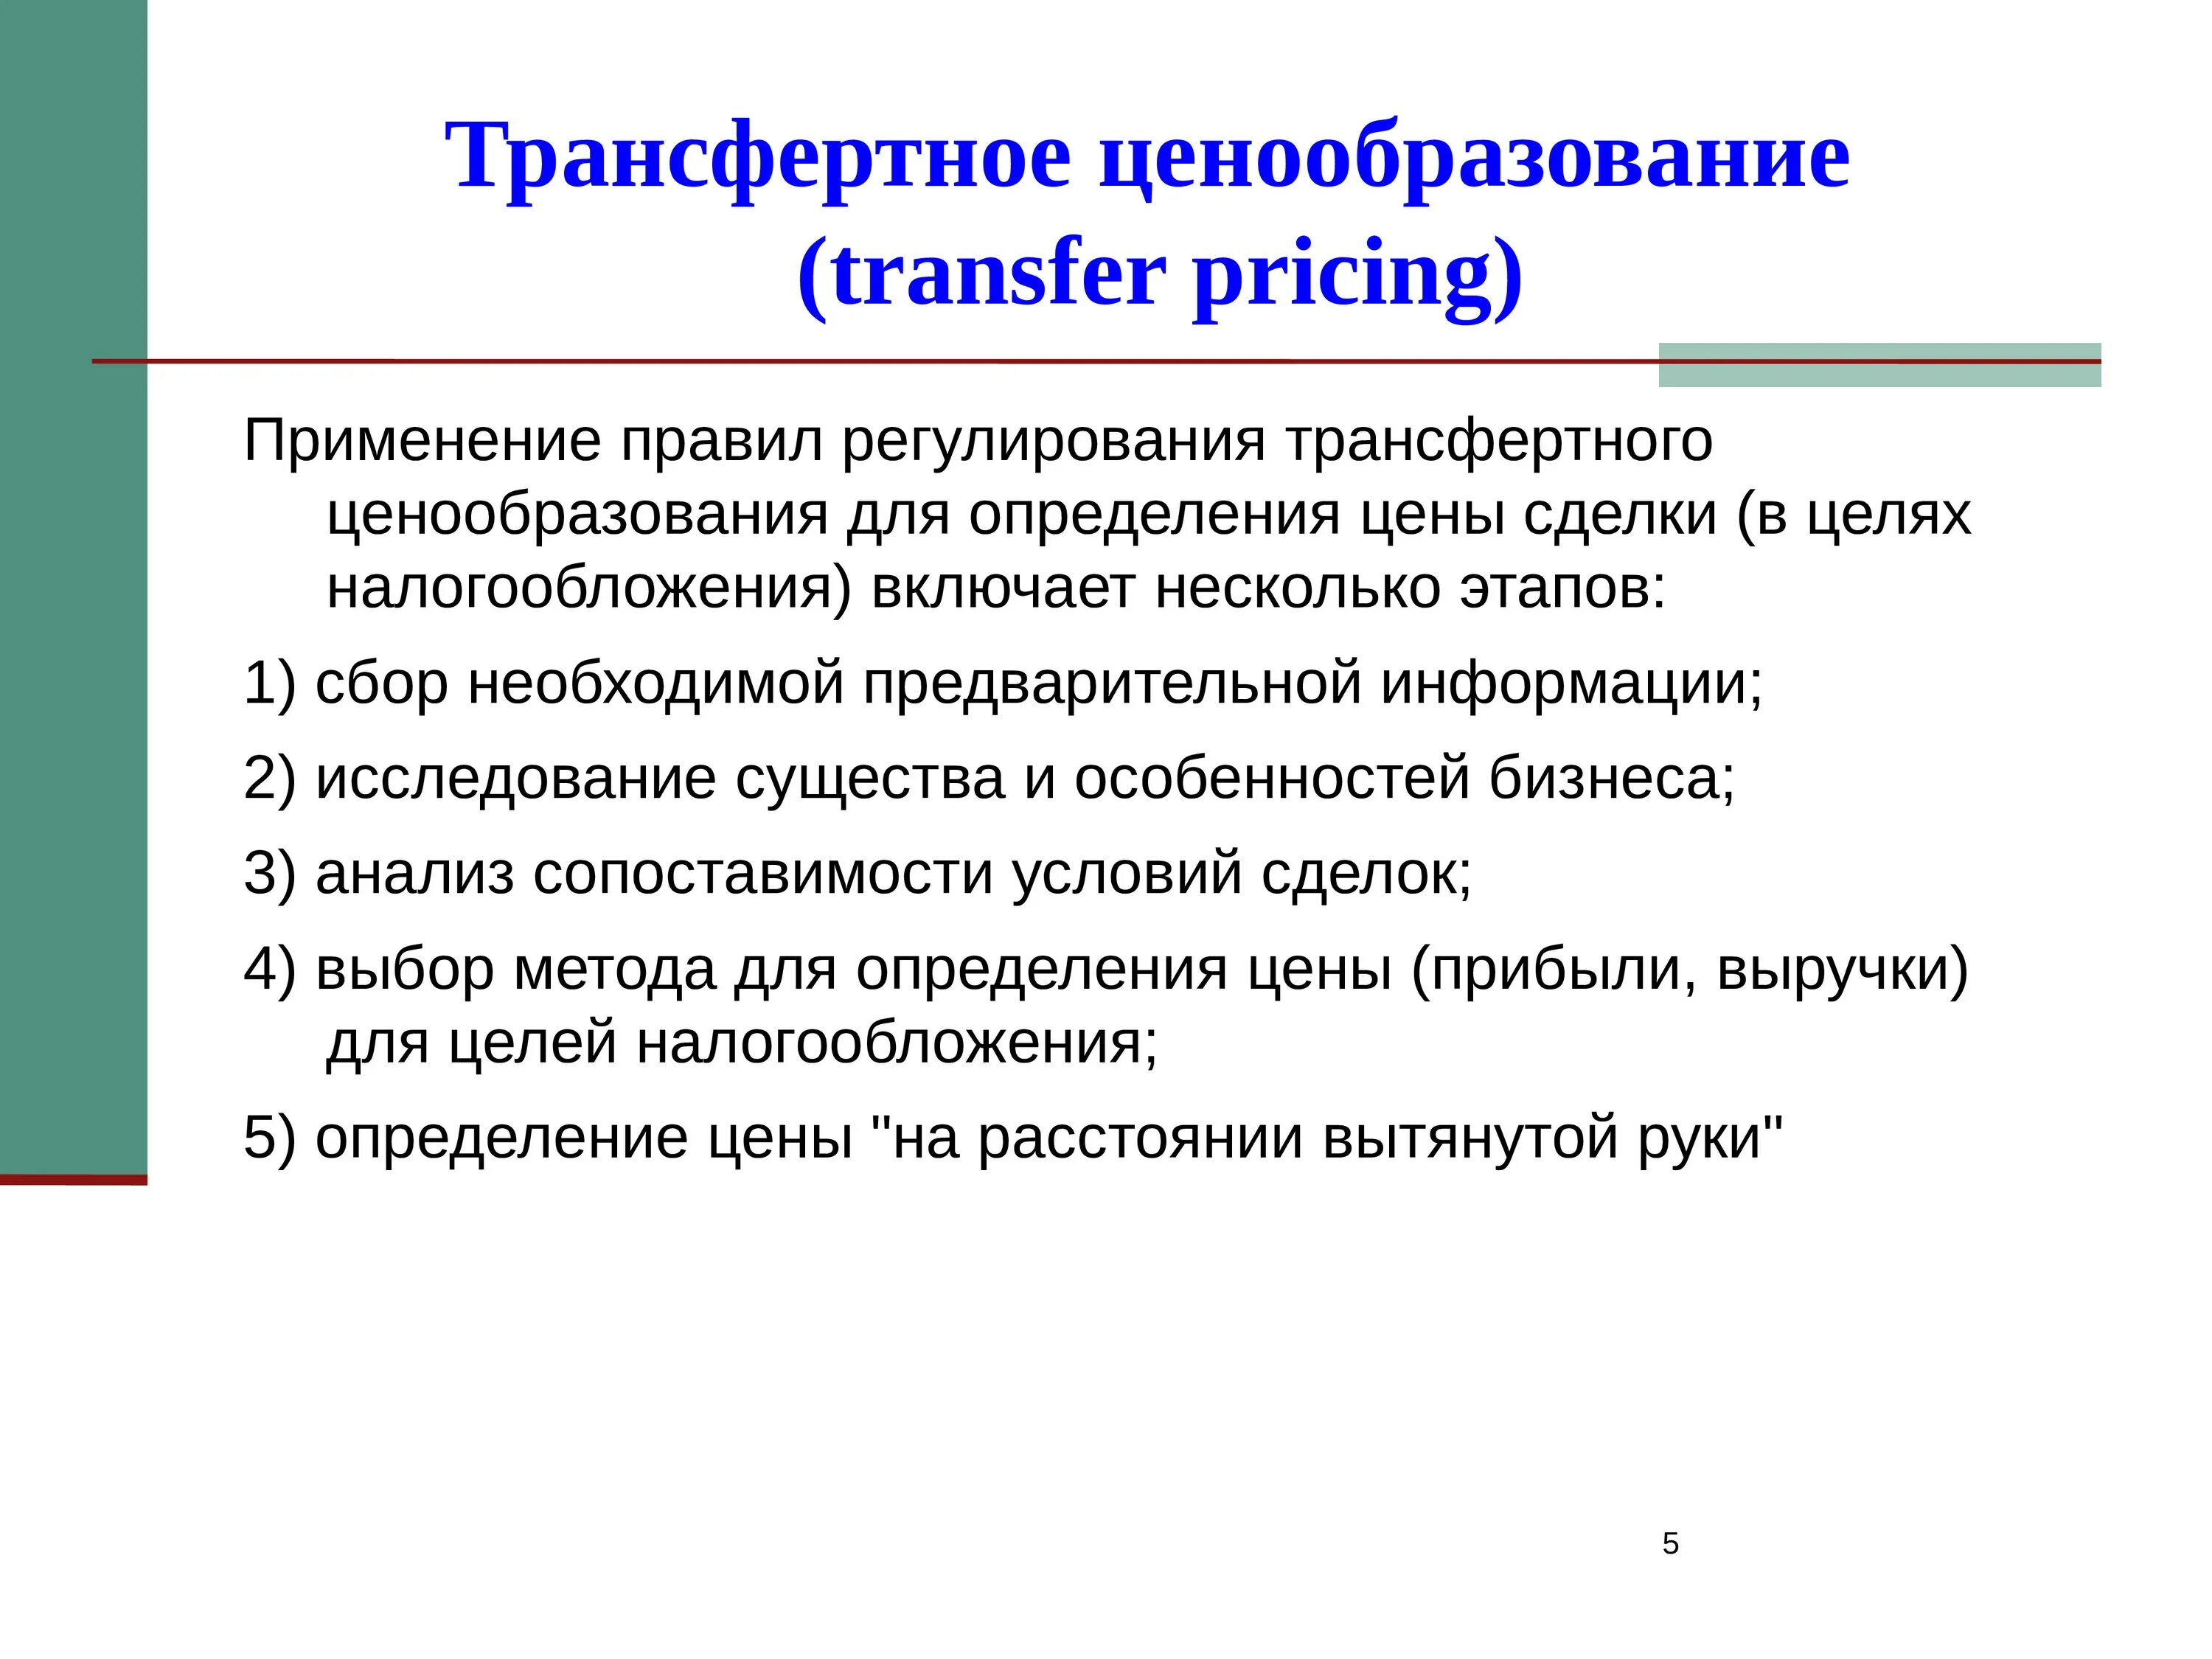 Трансфертное ценообразование. Методика трансфертного ценообразования. Трансфертное ценообразование пример. Схема трансфертного ценообразования. Трансферное ценообразование